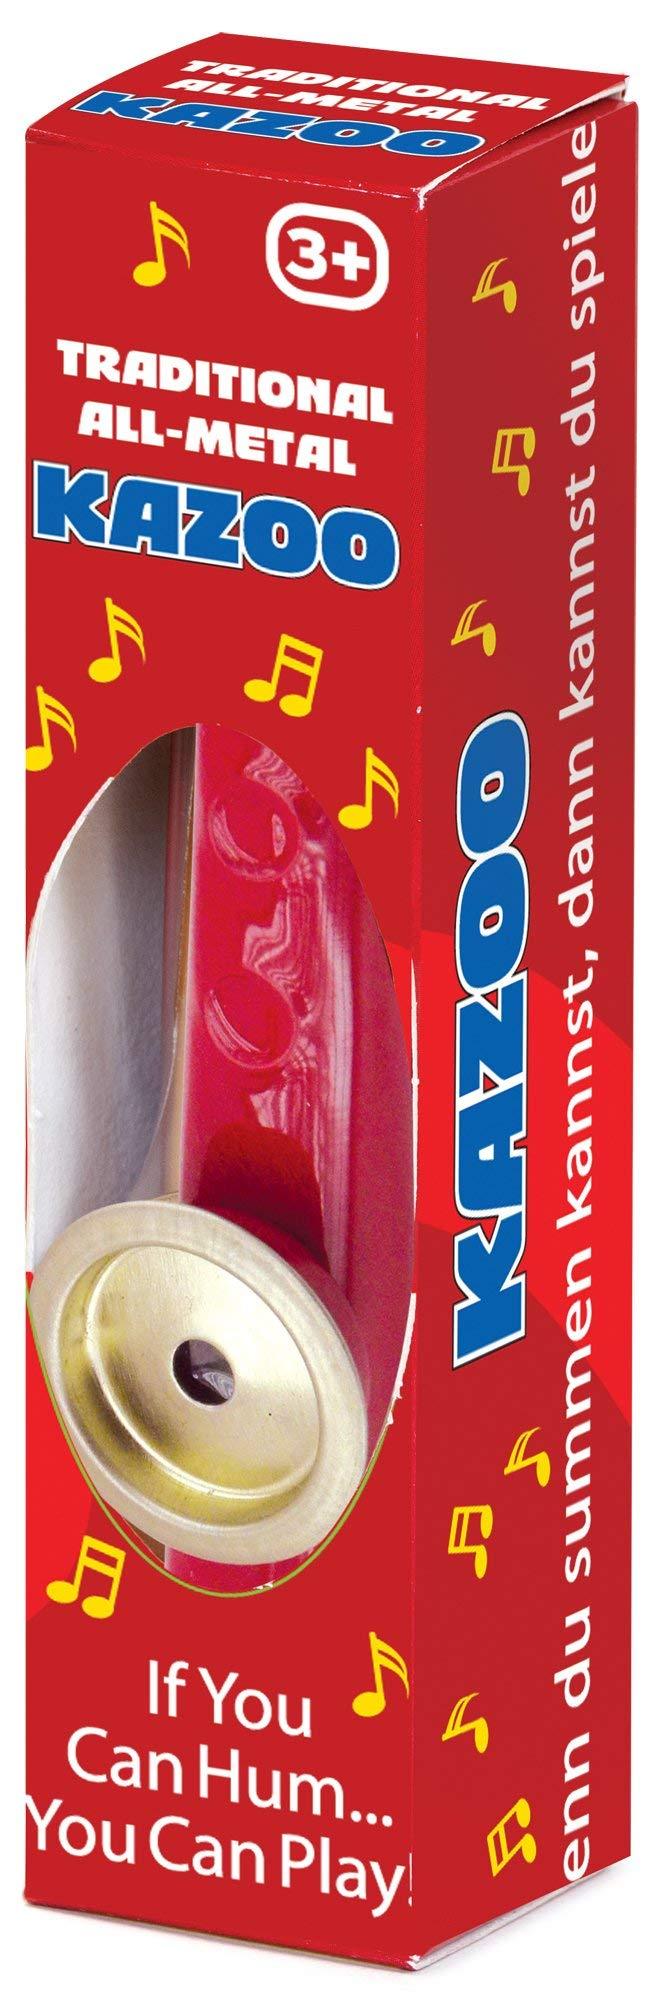 Tobar Metal Kazoo Toy Instrument 1 Original Packaging